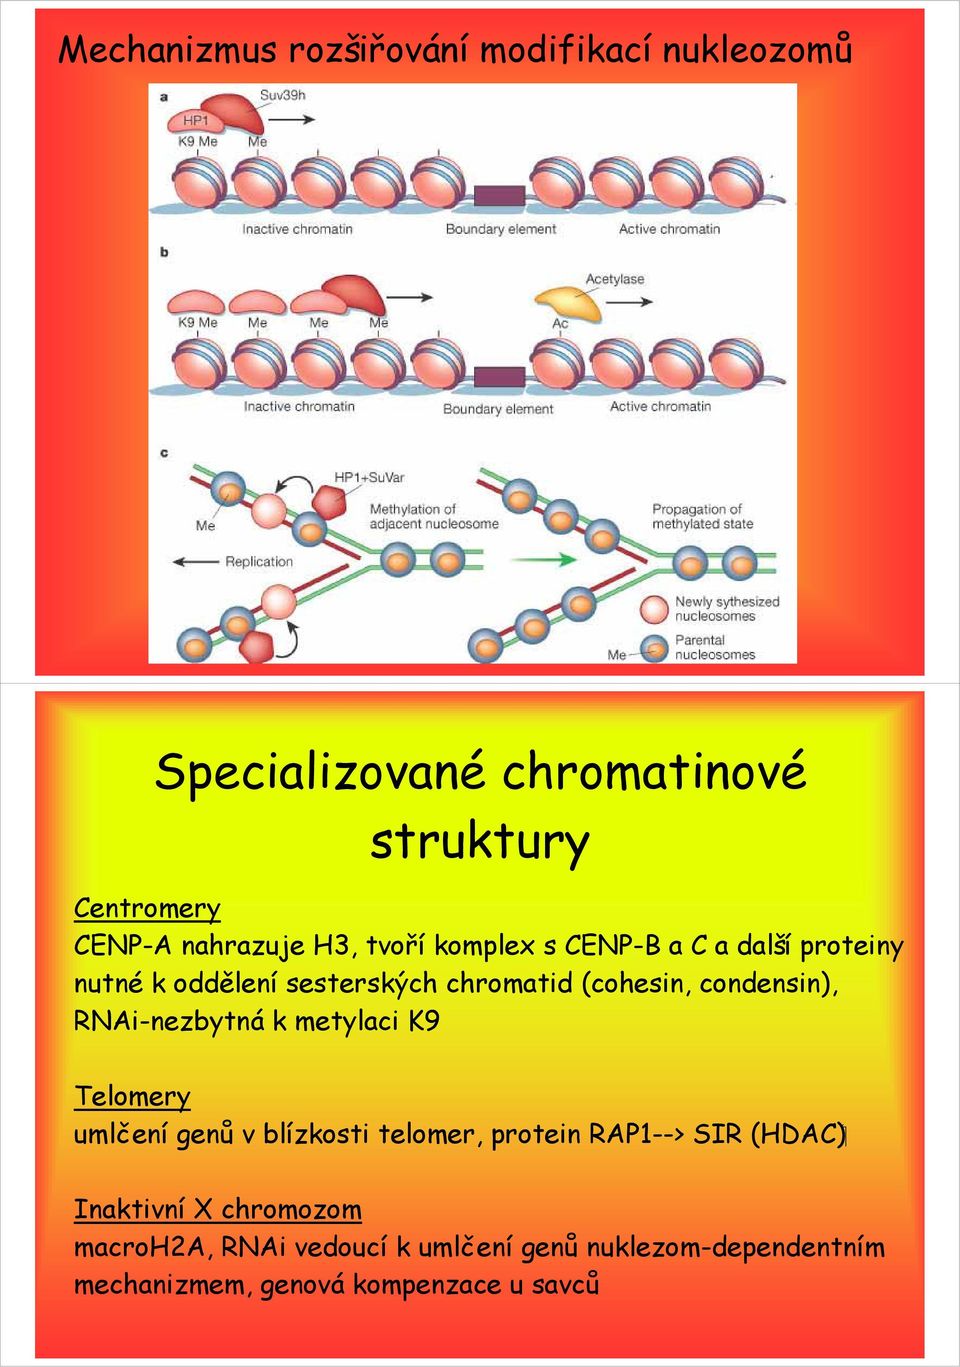 condensin), RNAi-nezbytná k metylaci K9 Telomery ( HDAC ) umlčení genů v blízkosti telomer, protein RAP1-->